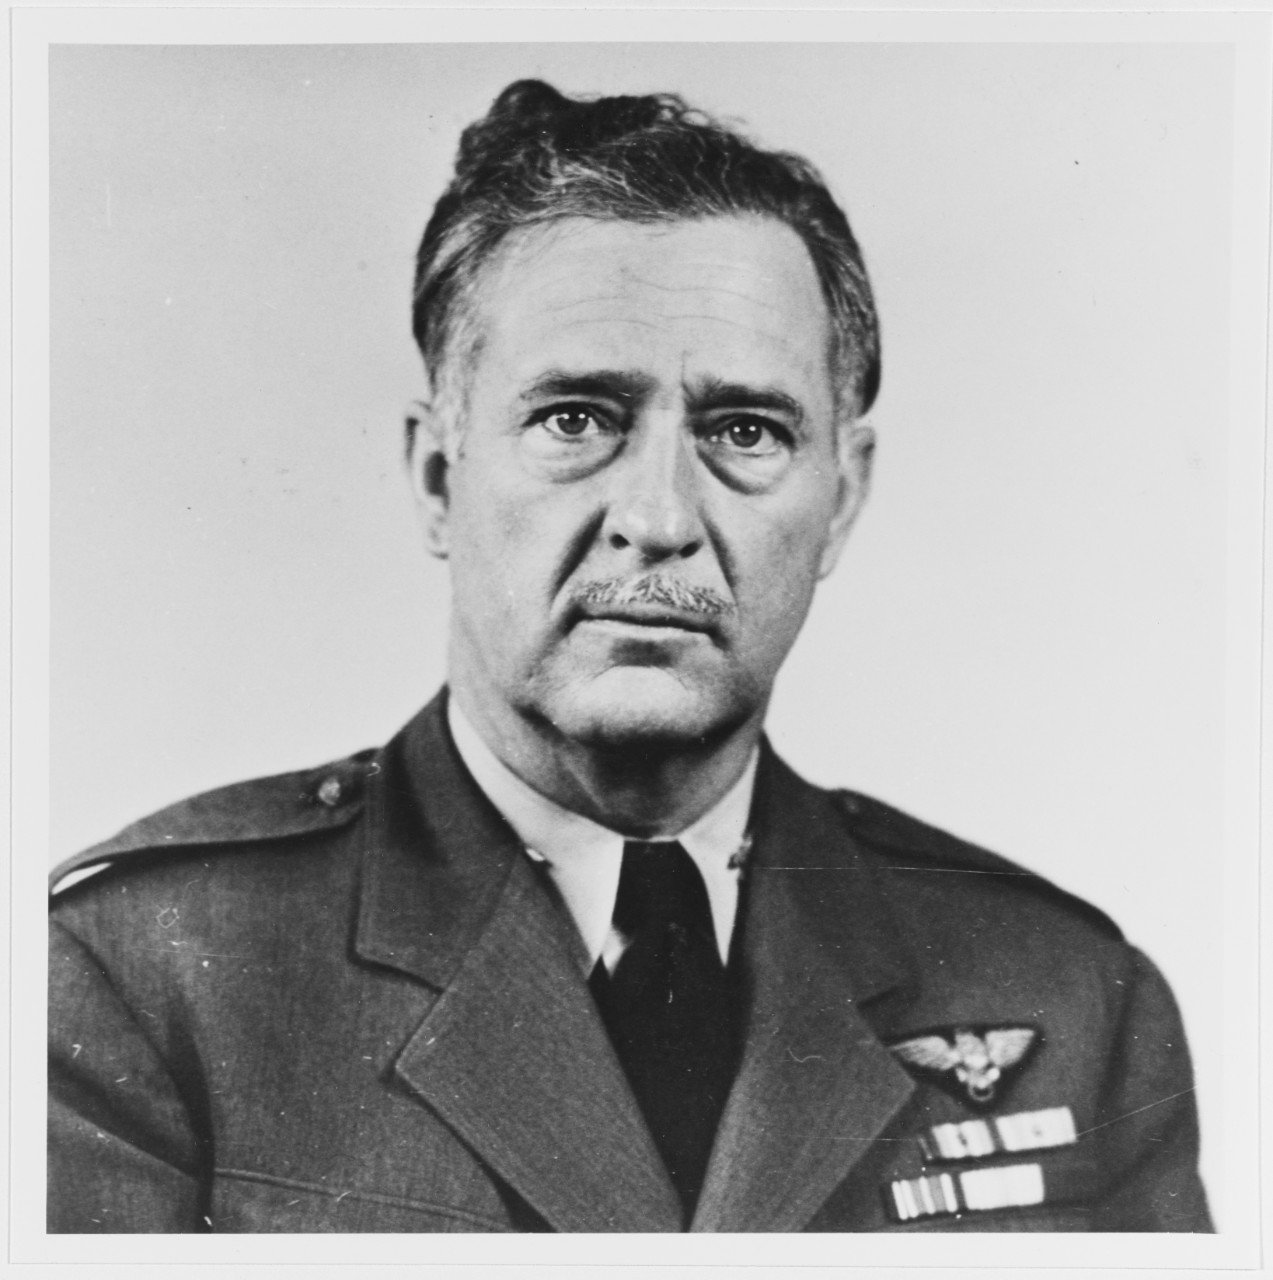 Captain Charles A. Nicholson, USN